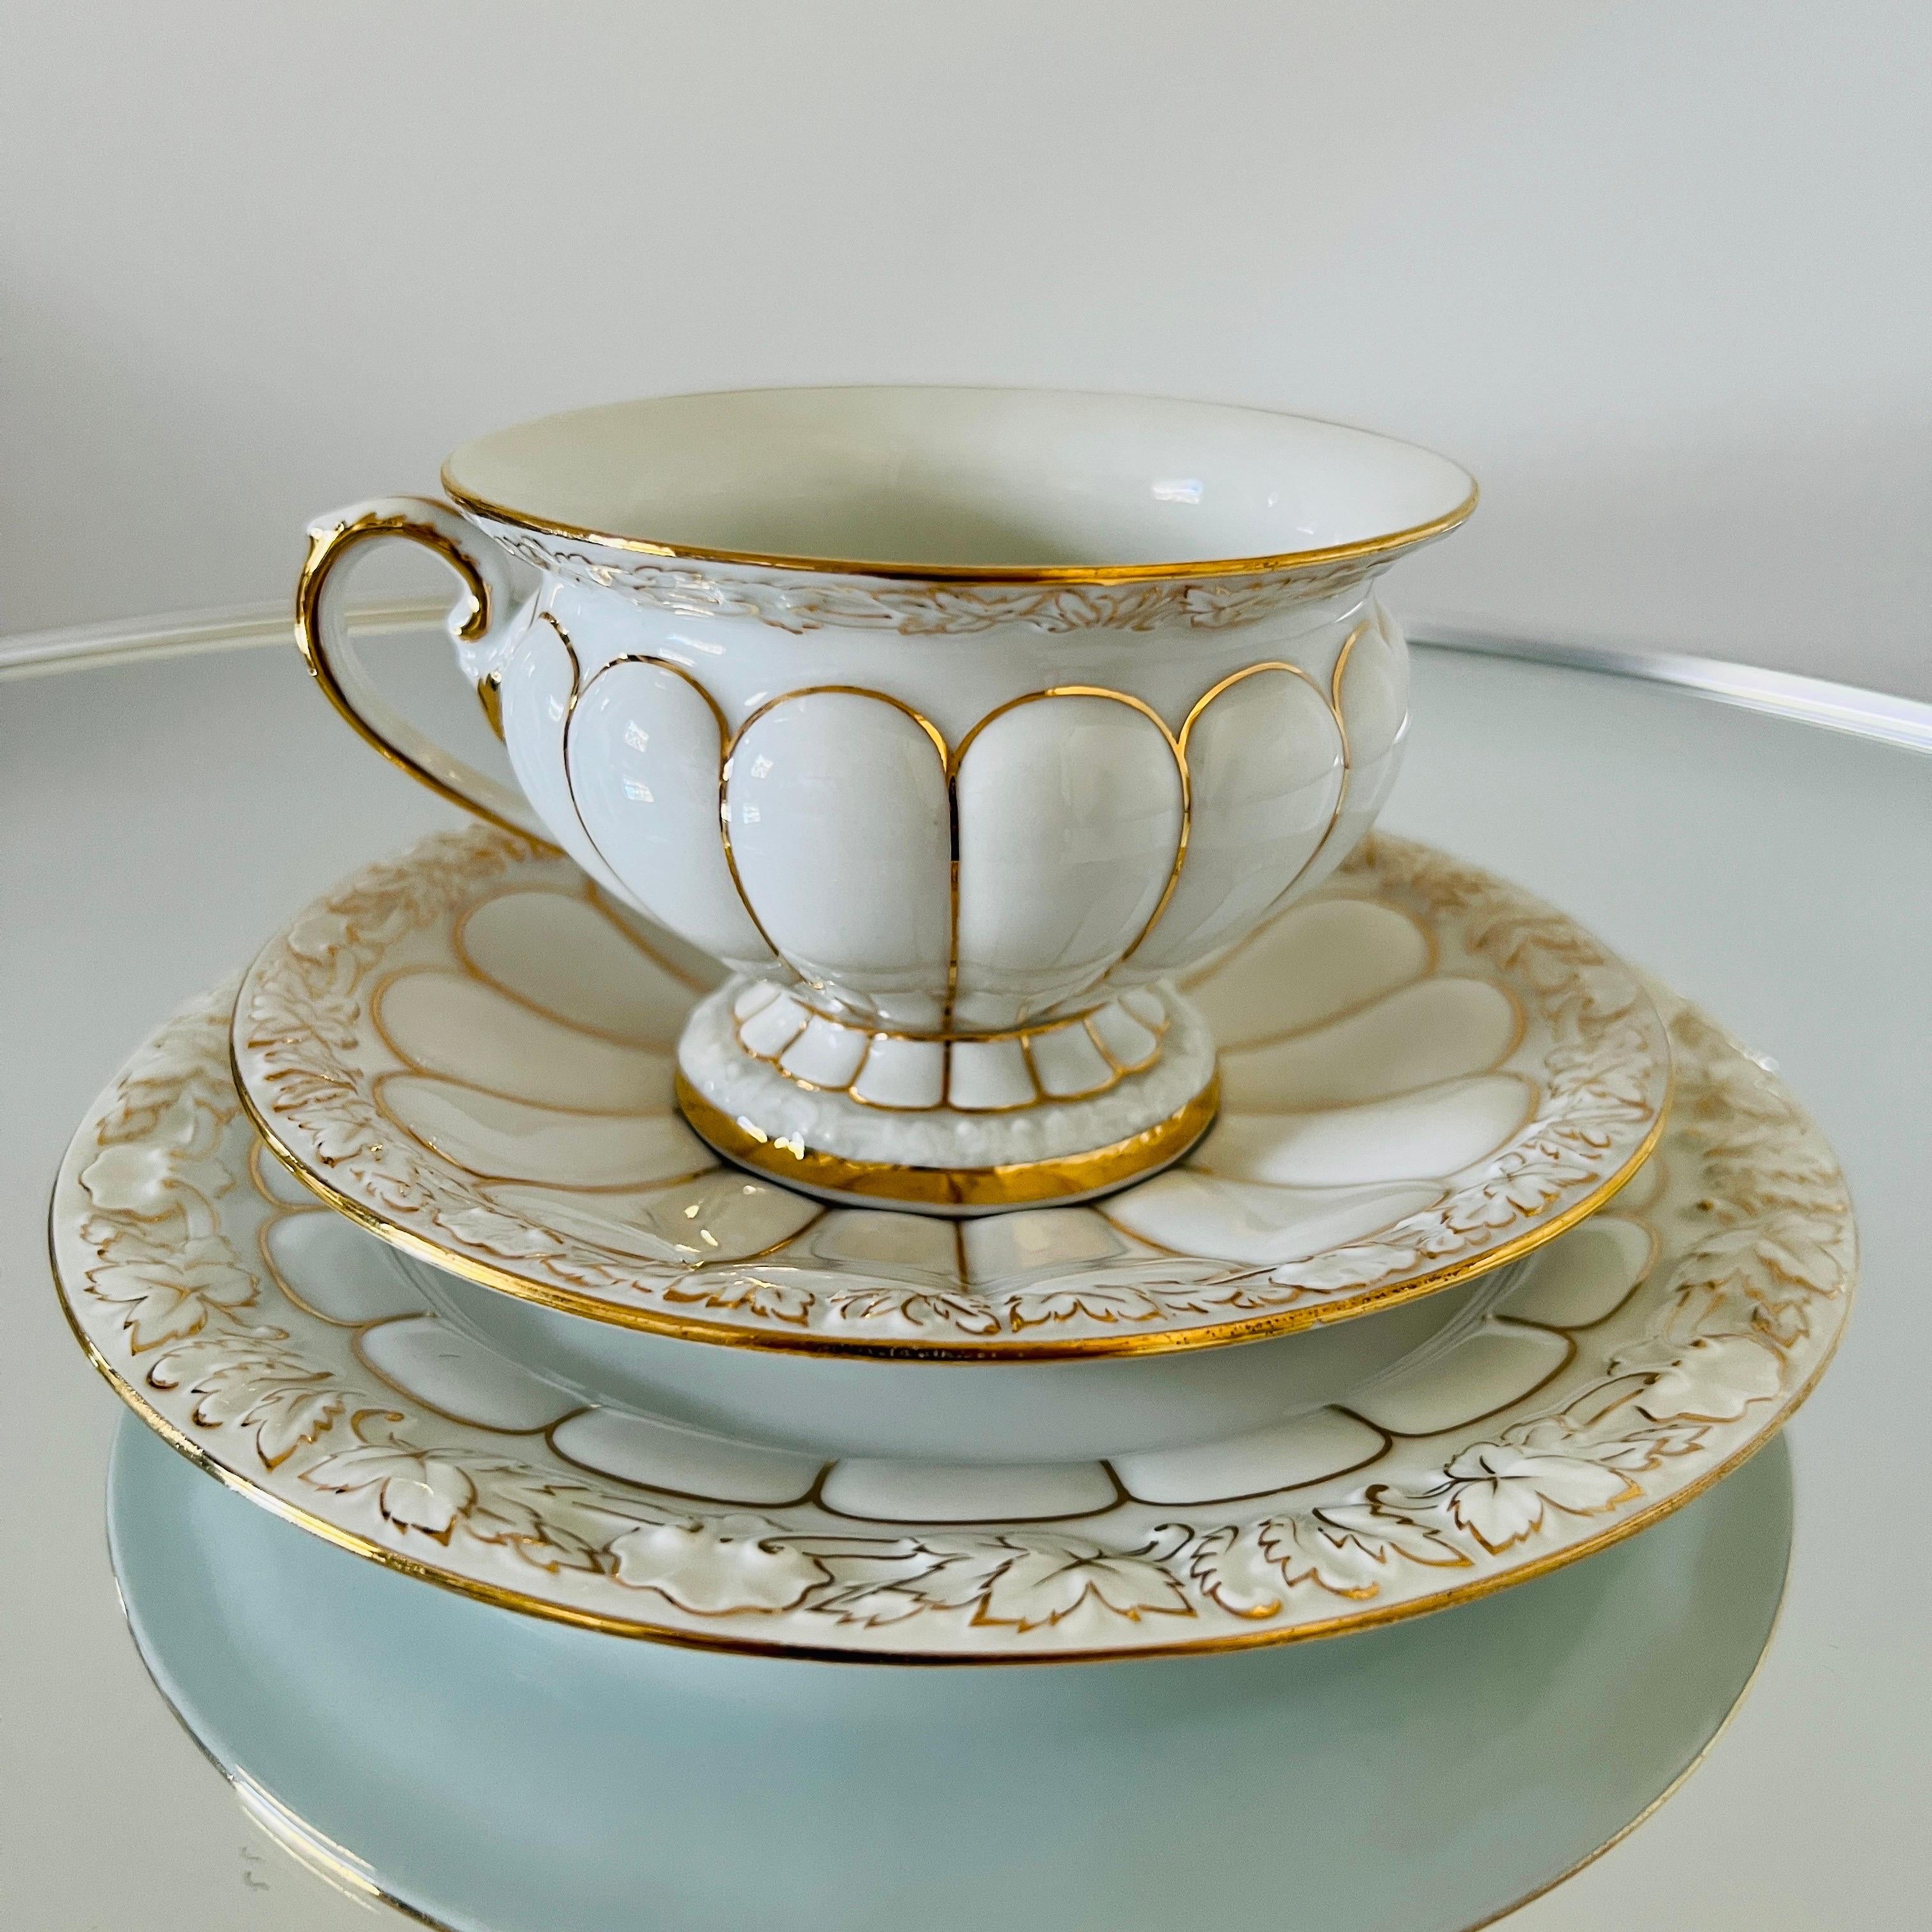 Meissener Porzellanset aus der opulenten Serie Goldener Barock, handgefertigt in Deutschland.  Das Set umfasst 40 Teile - 13 Kaffeetassen / 16 Untertassen / 11 Dessertteller.  Die Tassen, Untertassen und Dessertteller sind weiß glasiert und mit